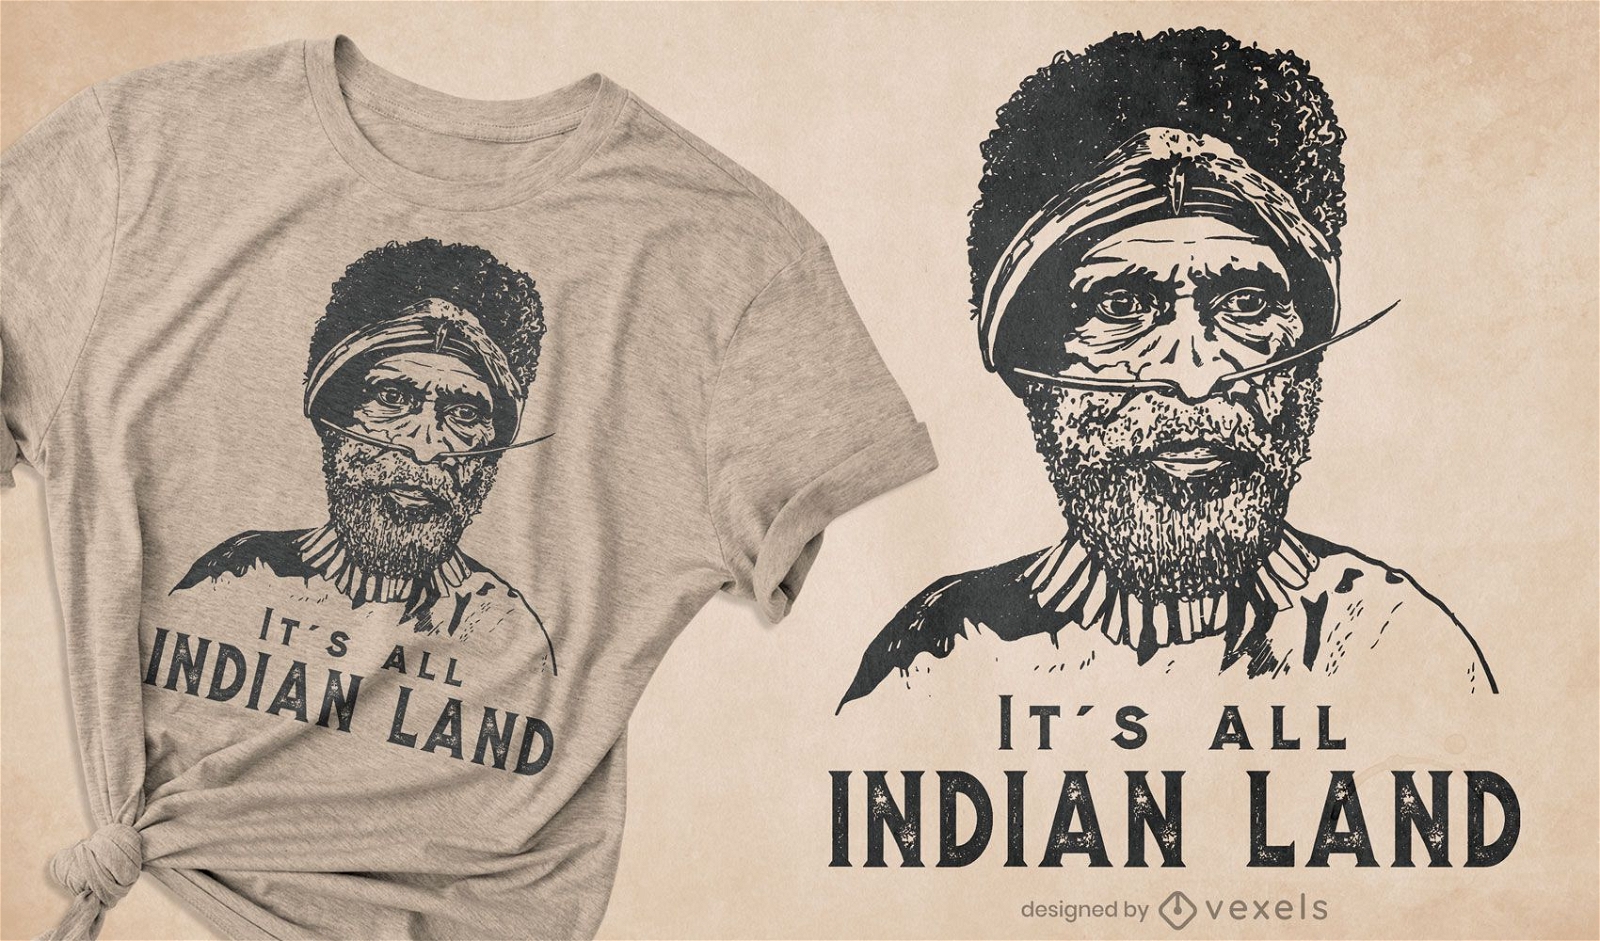 Es todo el dise?o de la camiseta de la tierra india.